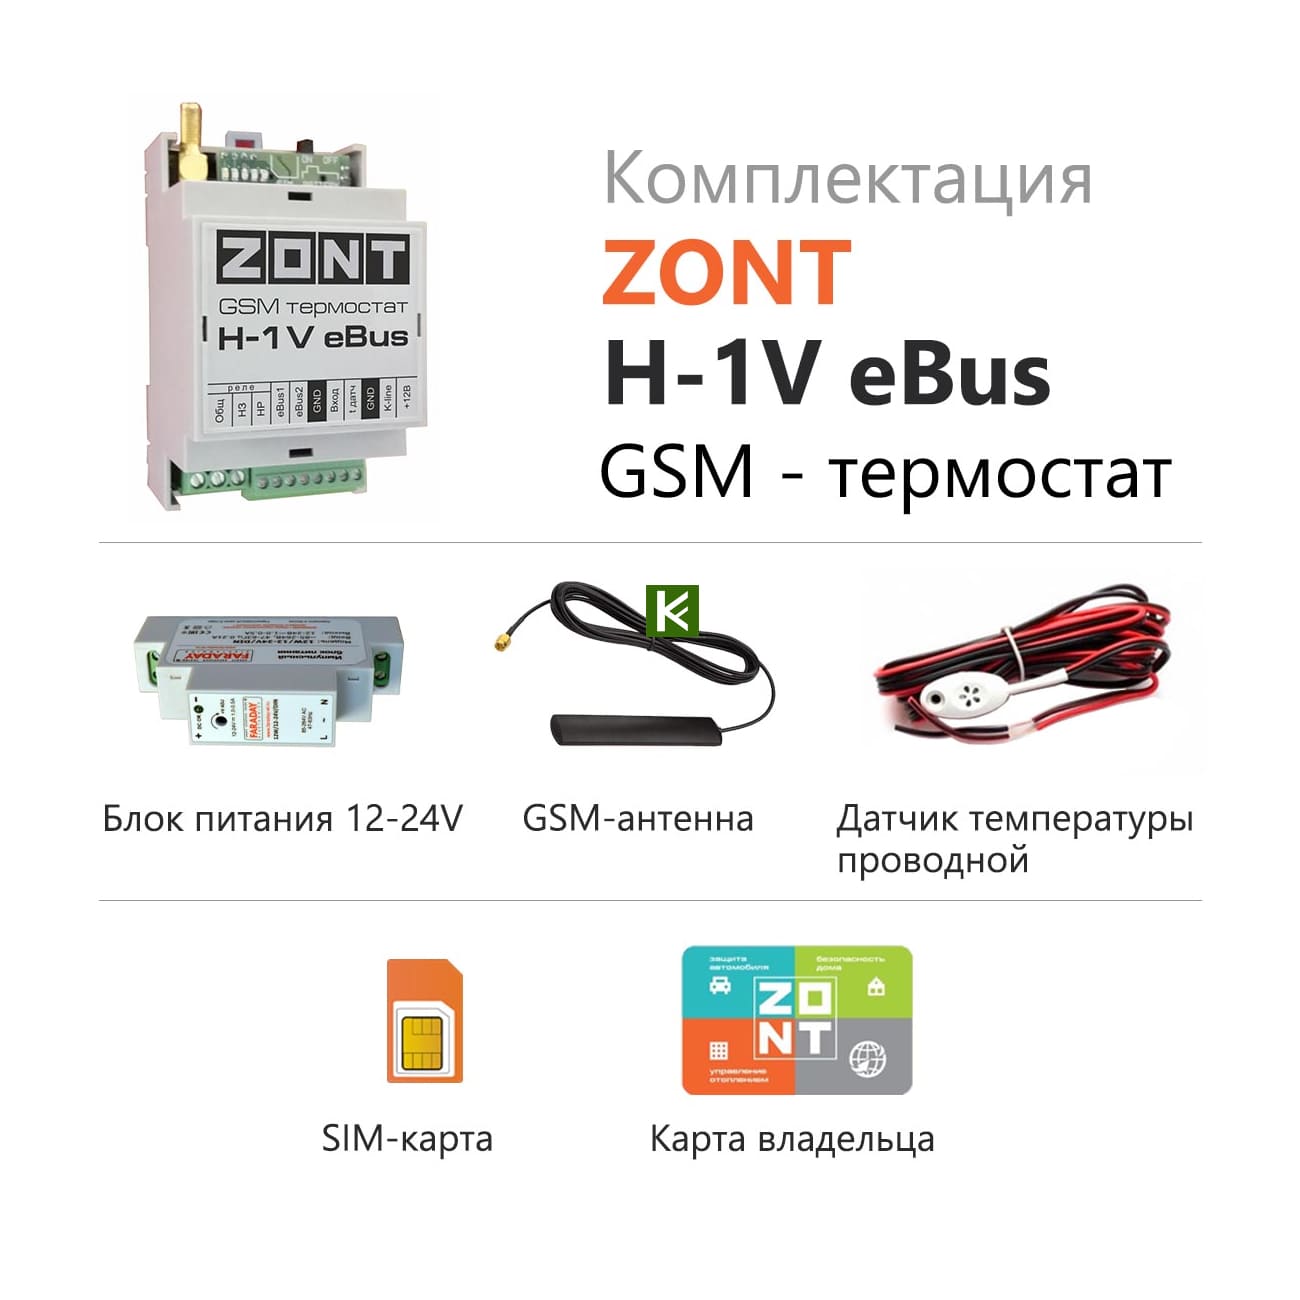 Zont h купить. Zont-h1v EBUS GSM-термостат. GSM-термостат Zont h-1. GSM-термостат Zont h-1v. GSM термостат Zont h-1v e-Bus.